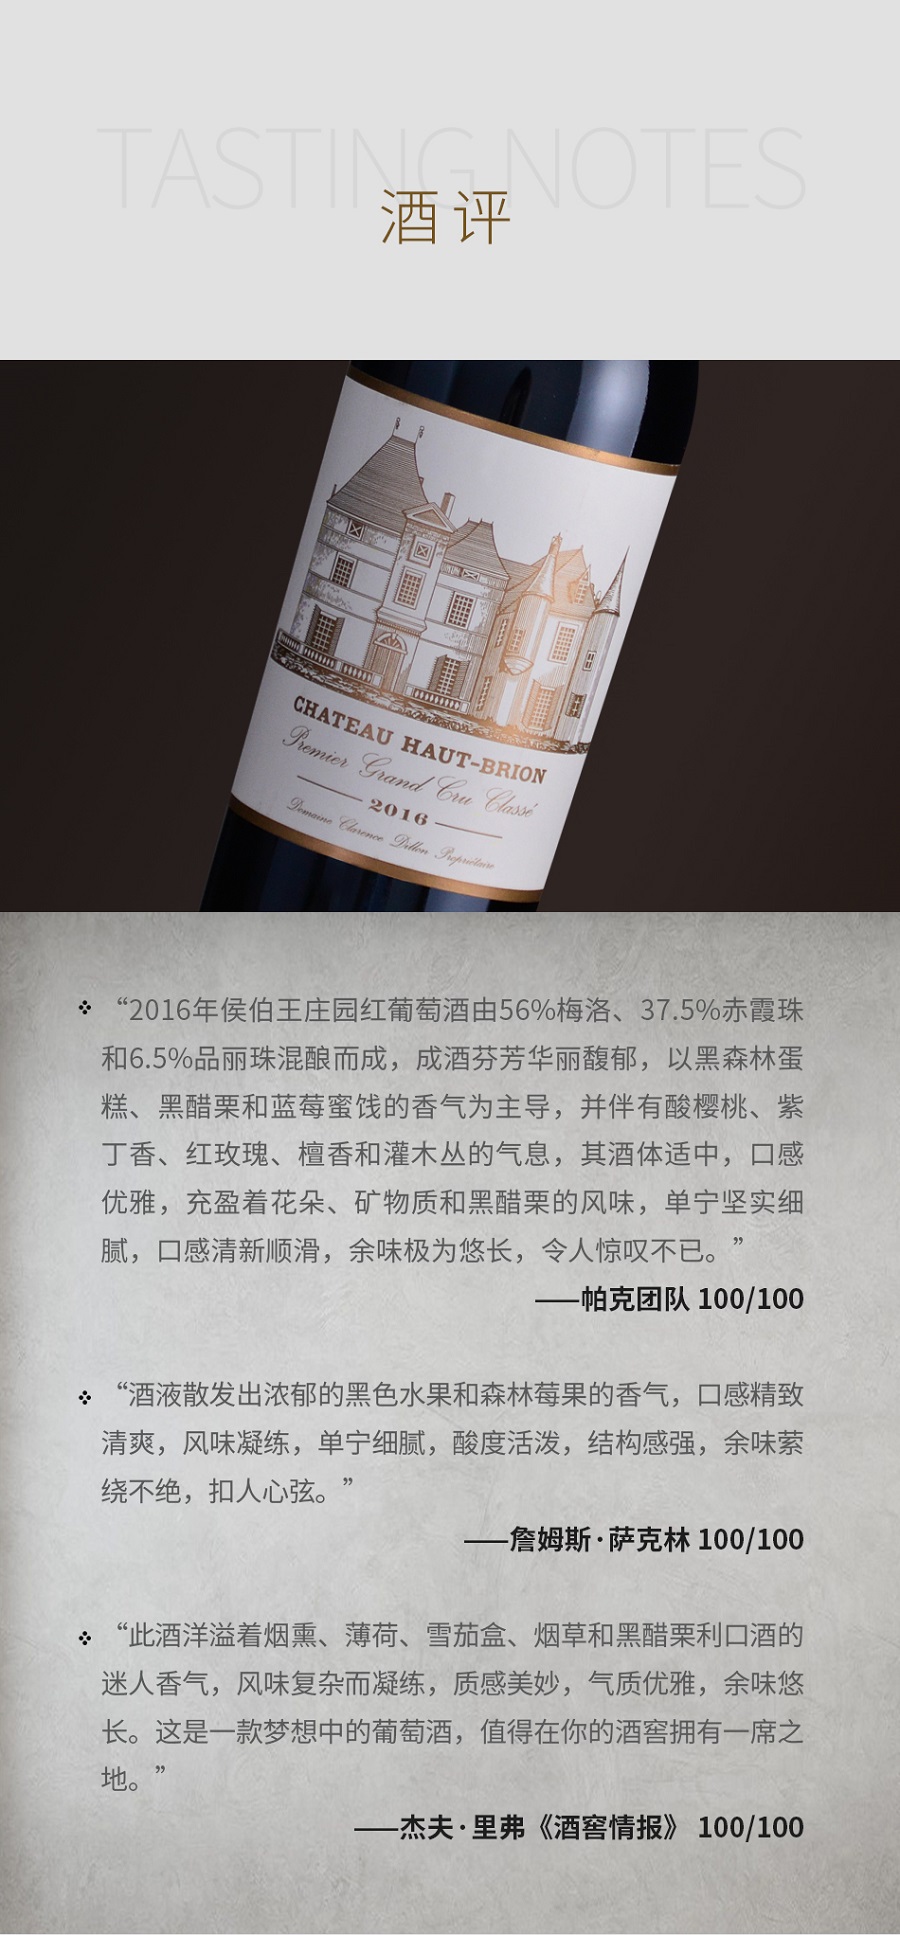 2016年侯伯王庄园红葡萄酒